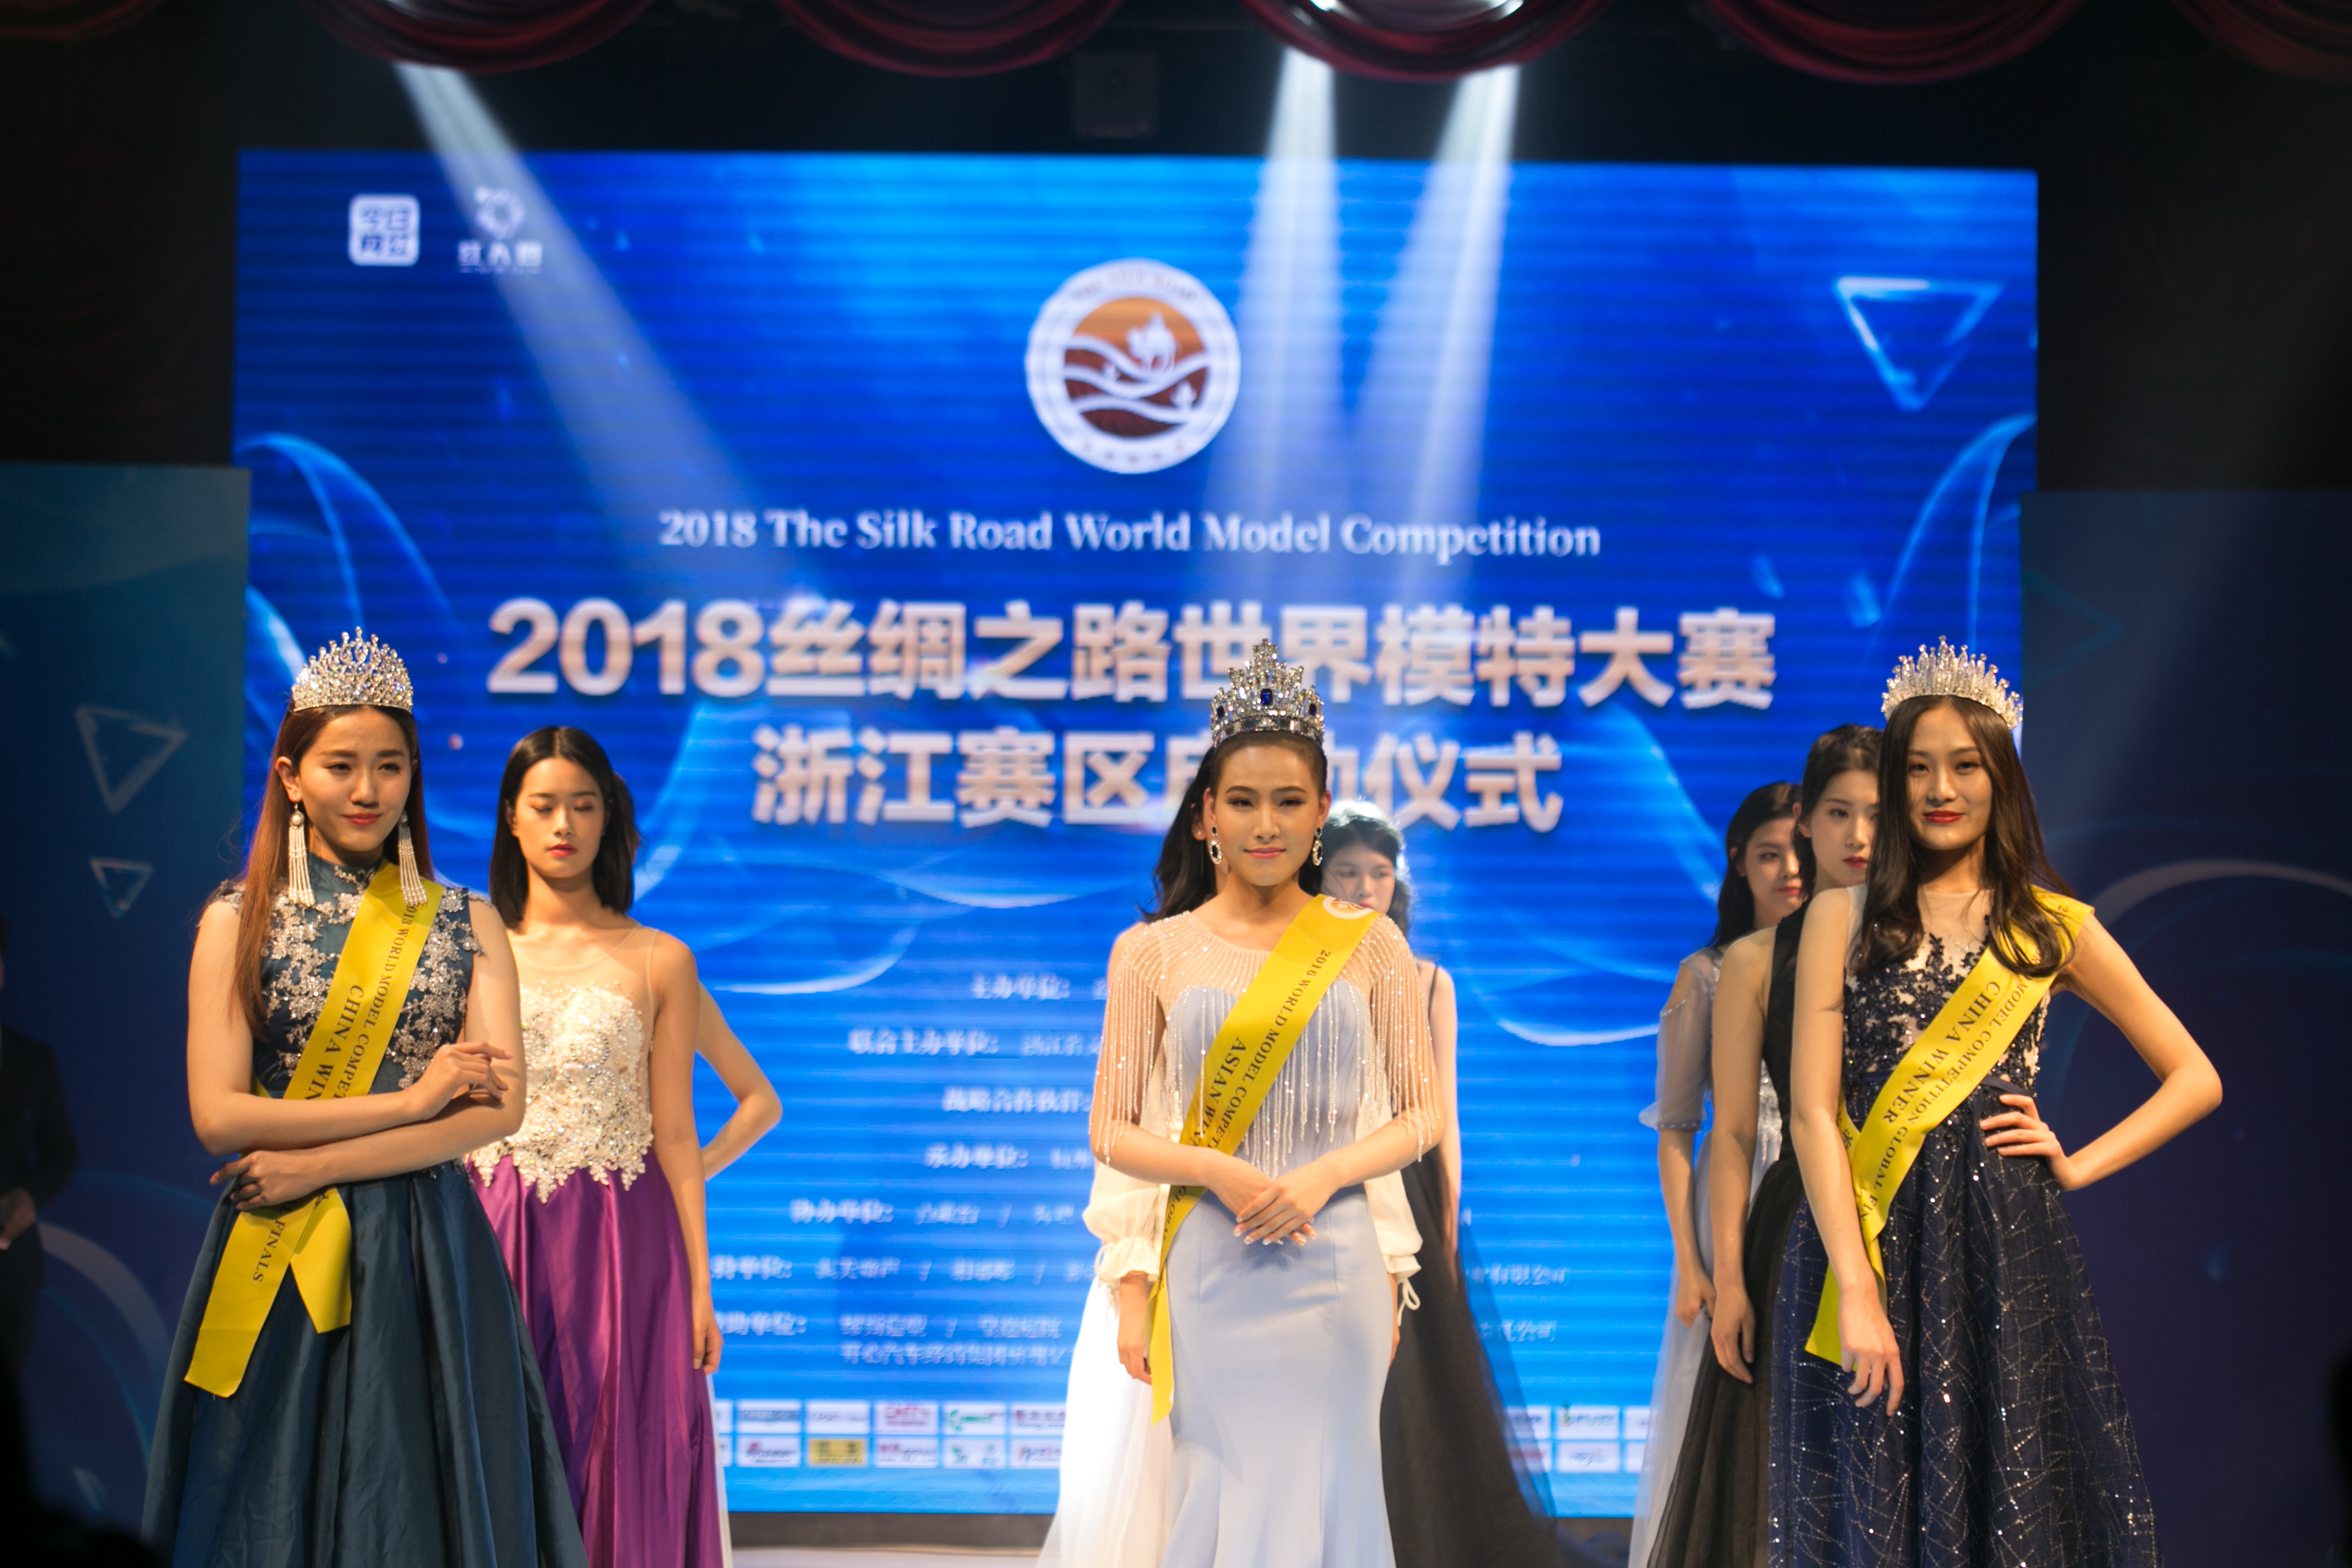 2018丝绸之路世界模特大赛浙江赛区启动仪式